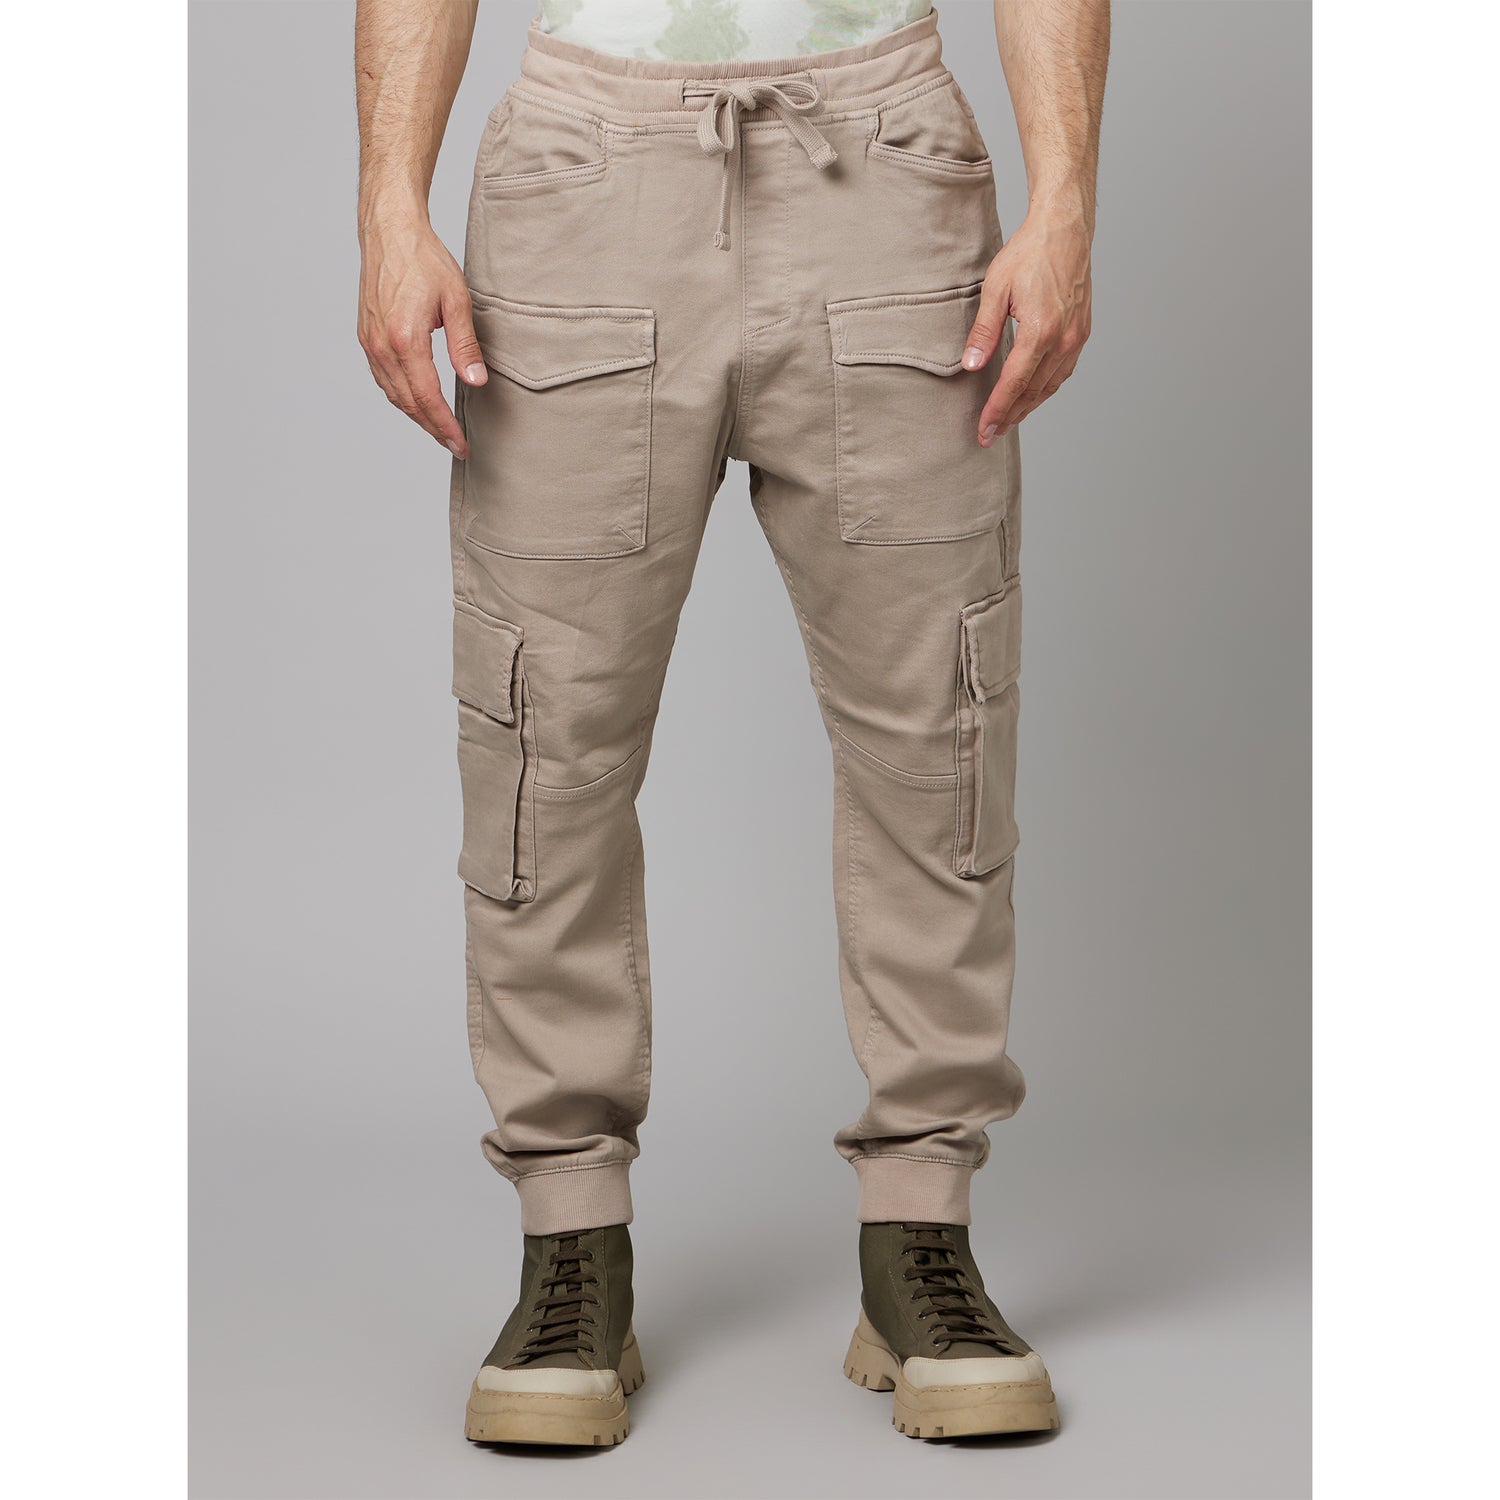 Beige Cotton Mid-Rise Plain Cargos Trousers (DOPOCKET1)